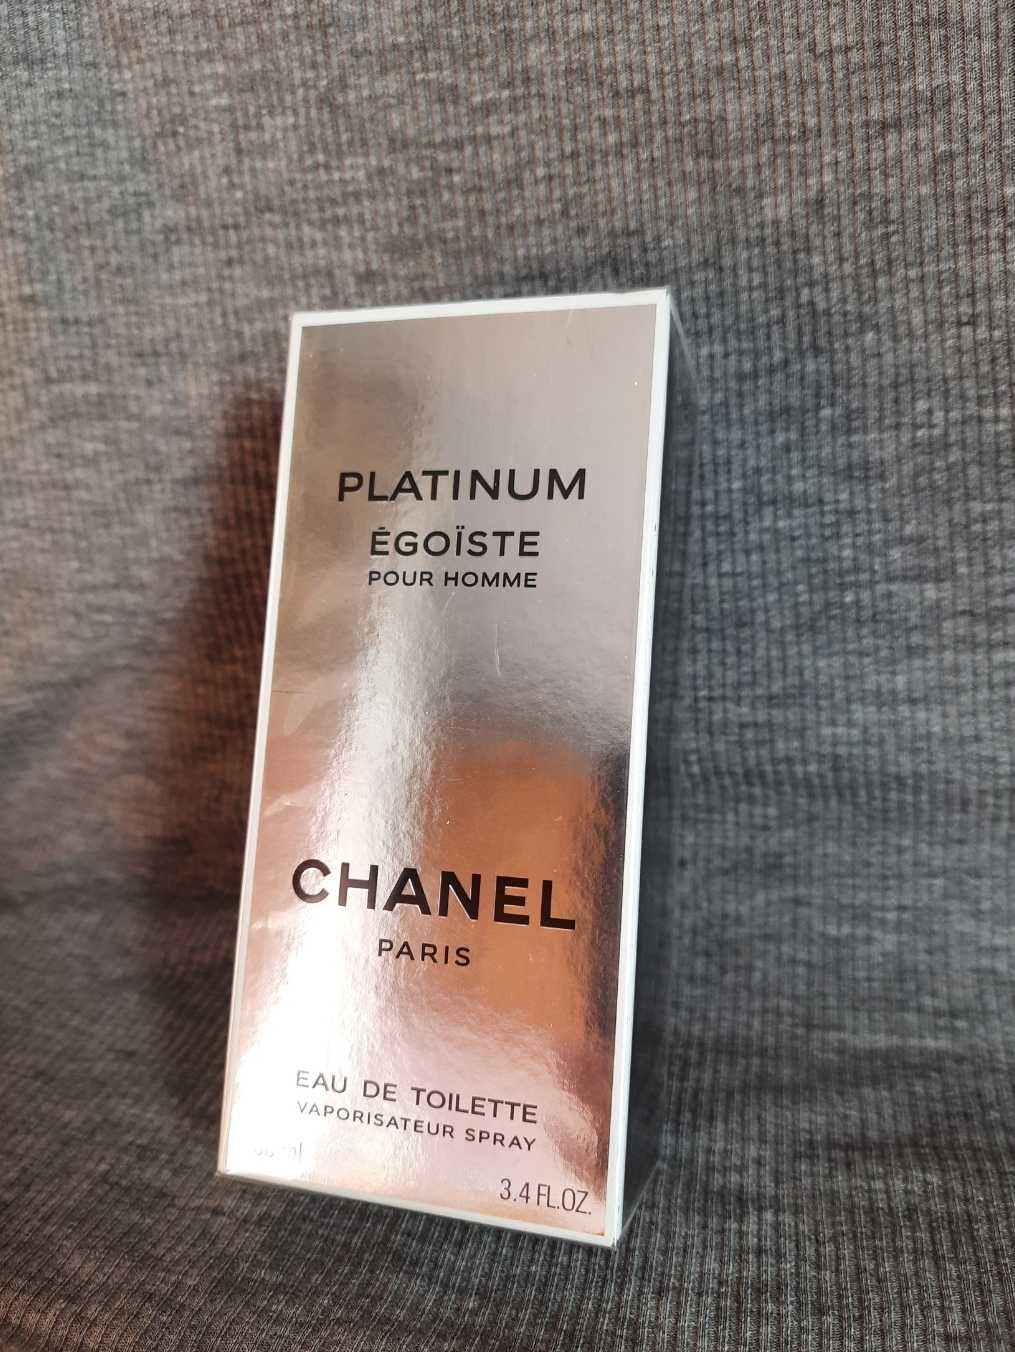 Chanel Egoiste Platinum шанель егоїст 100мл оригинал платинум эгоист